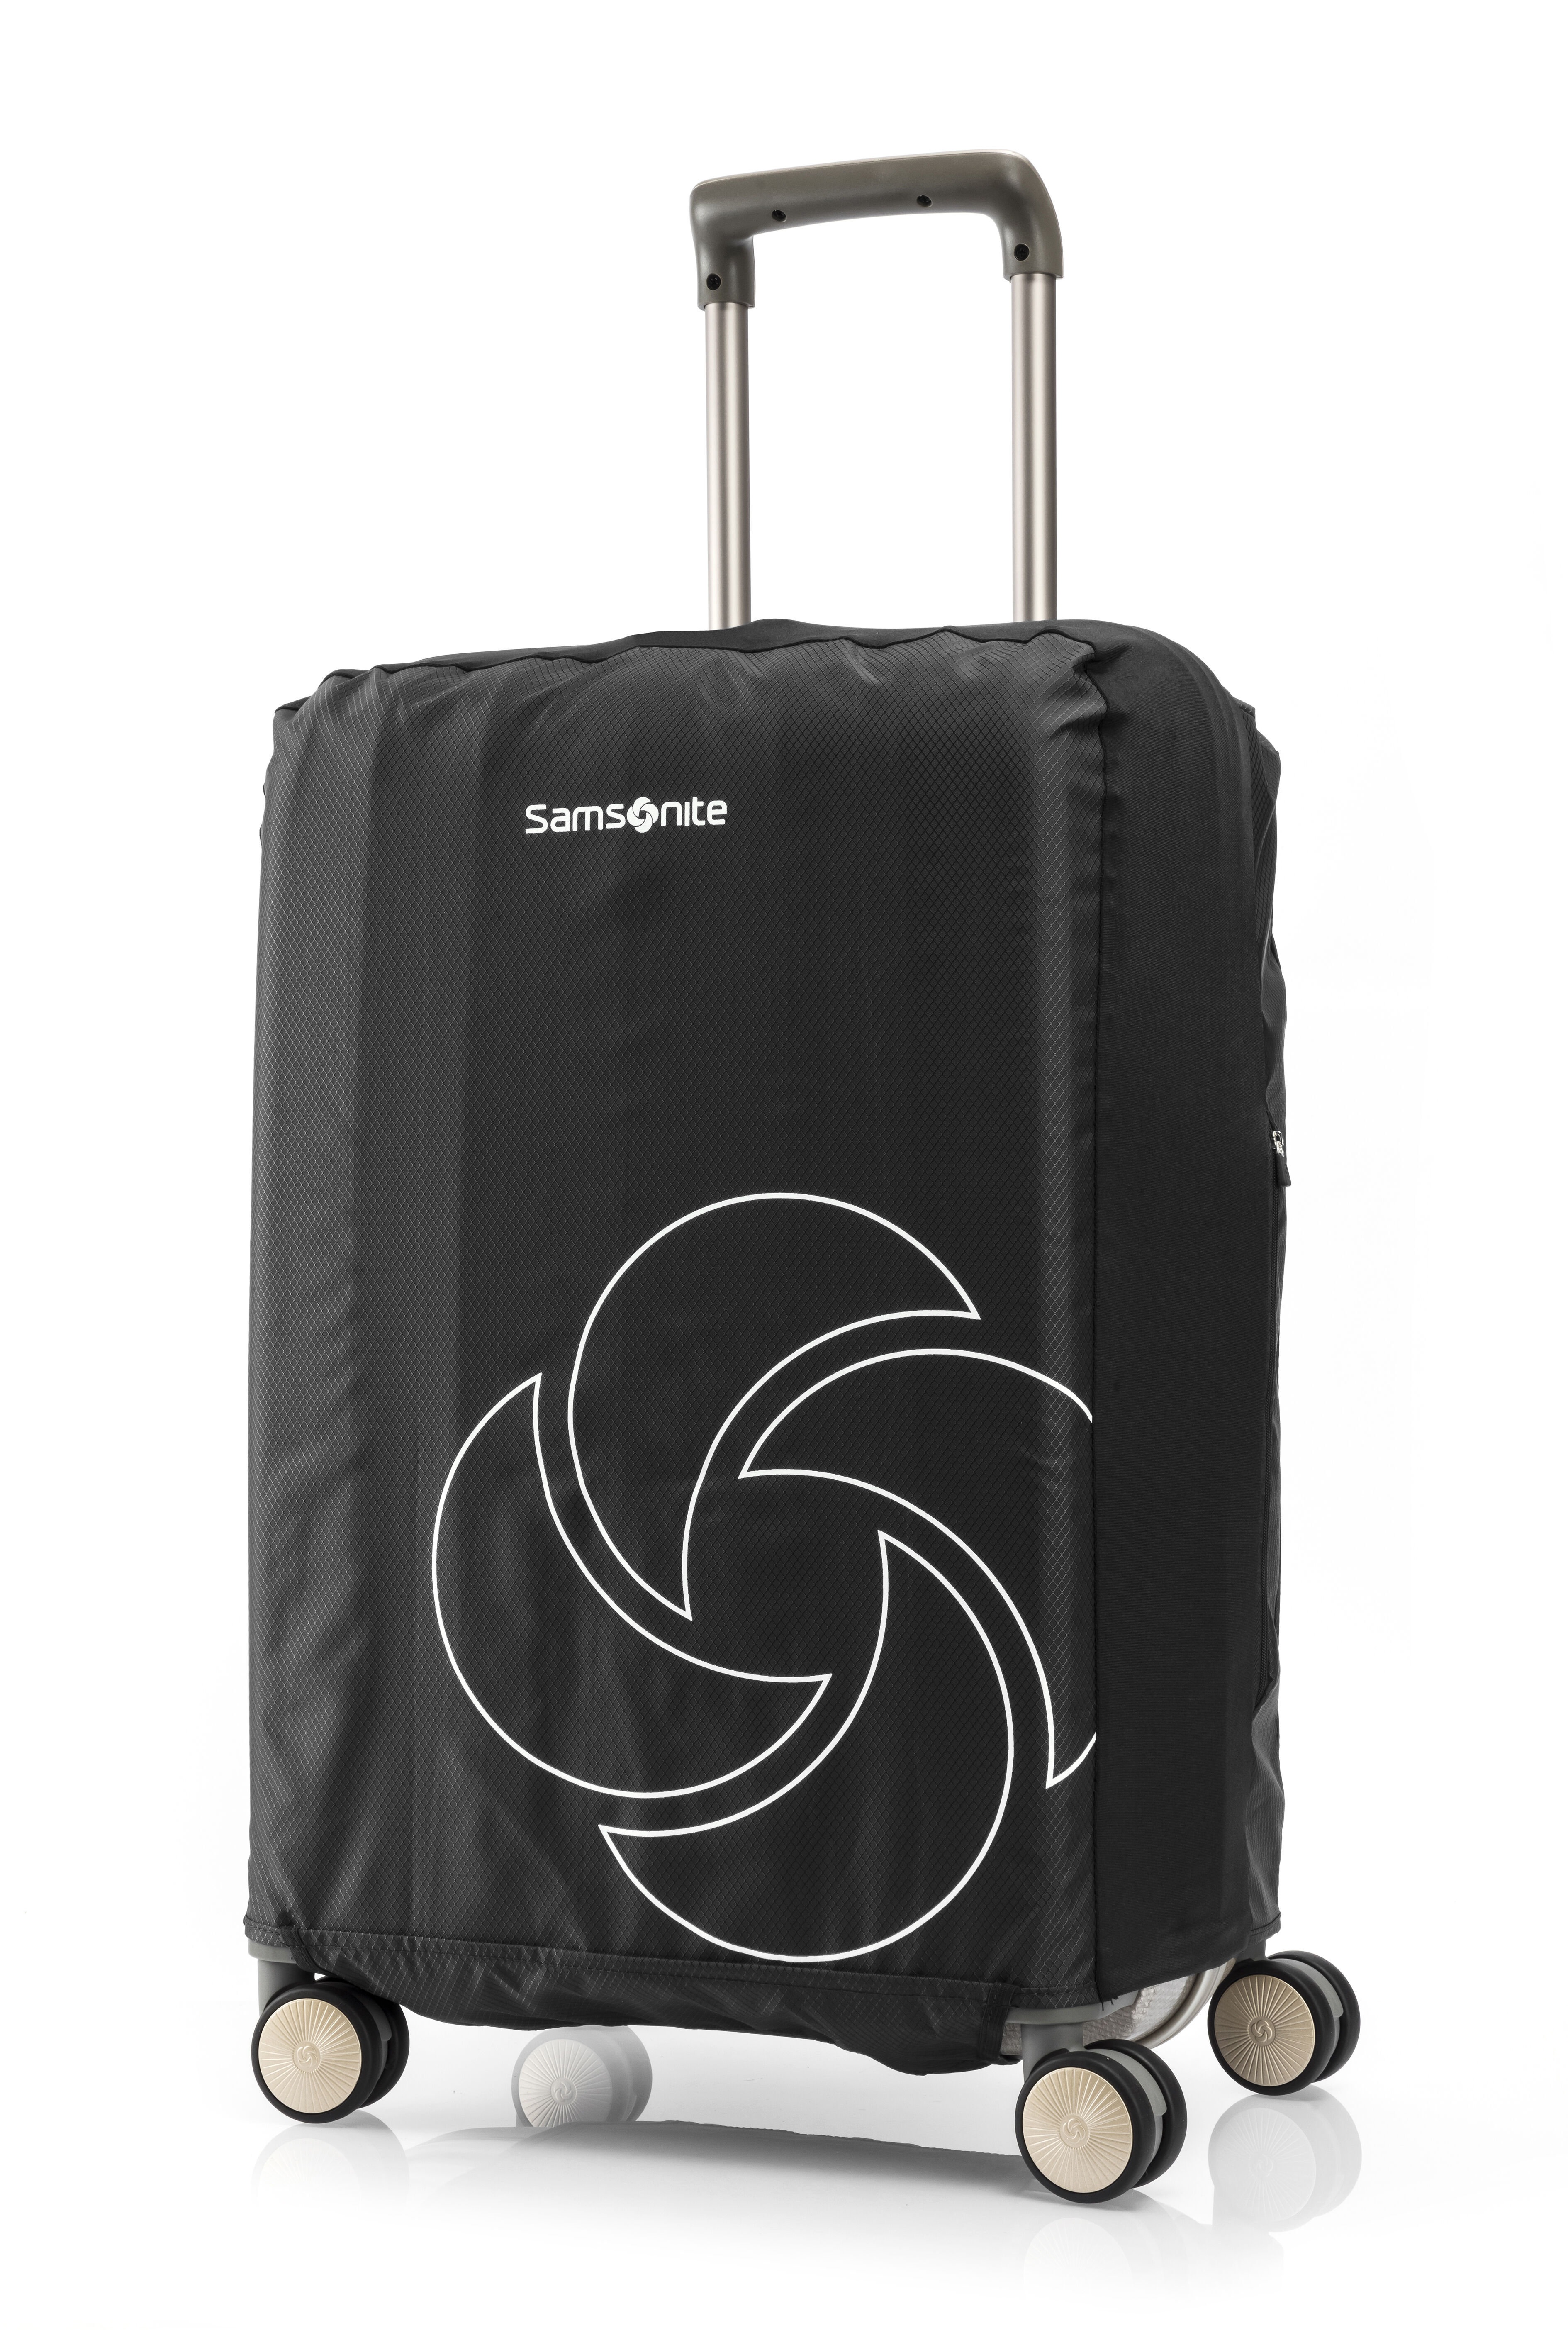 samsonite large suitcase cover